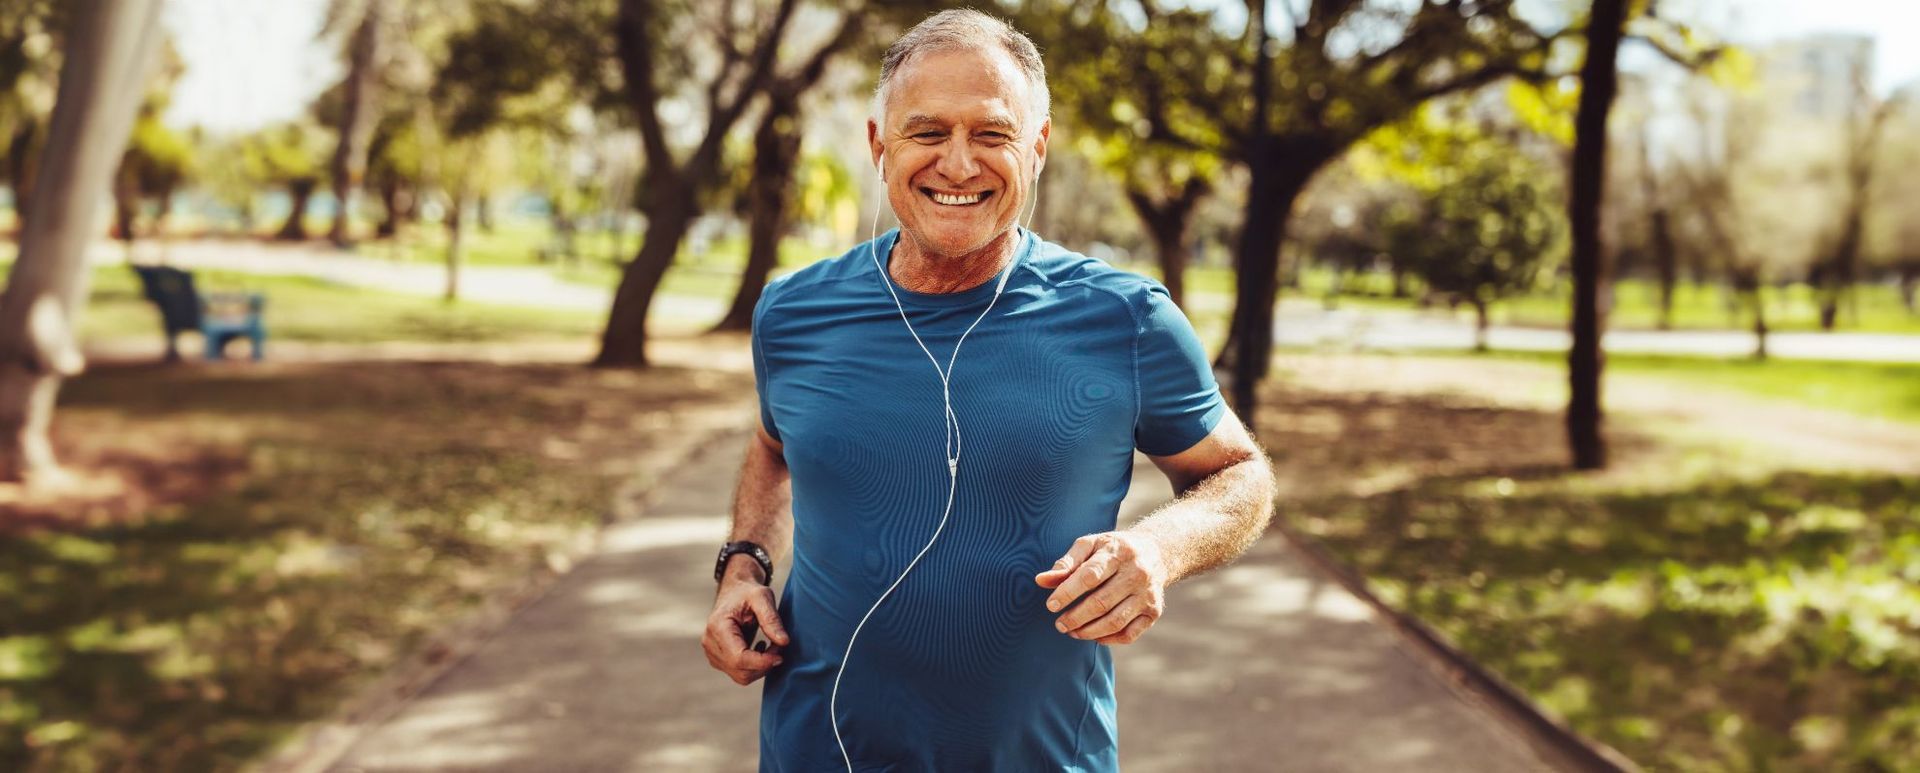 senior white man in blue shirt running in park